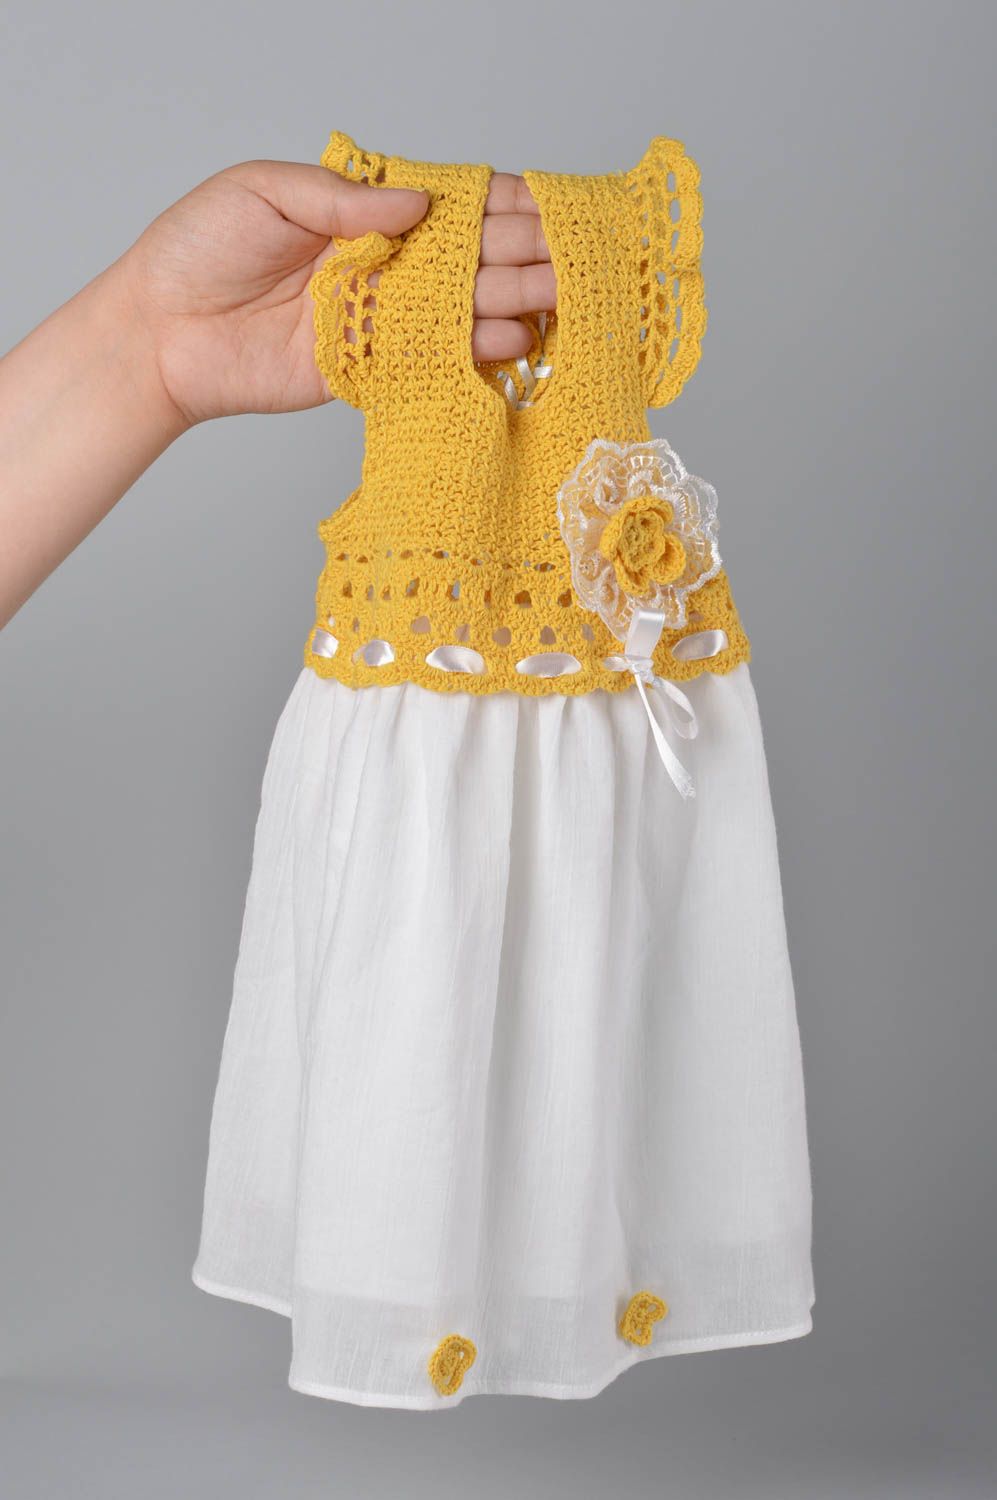 Красивое детское платье хэнд мэйд одежда для девочек вязаное детское платье фото 1